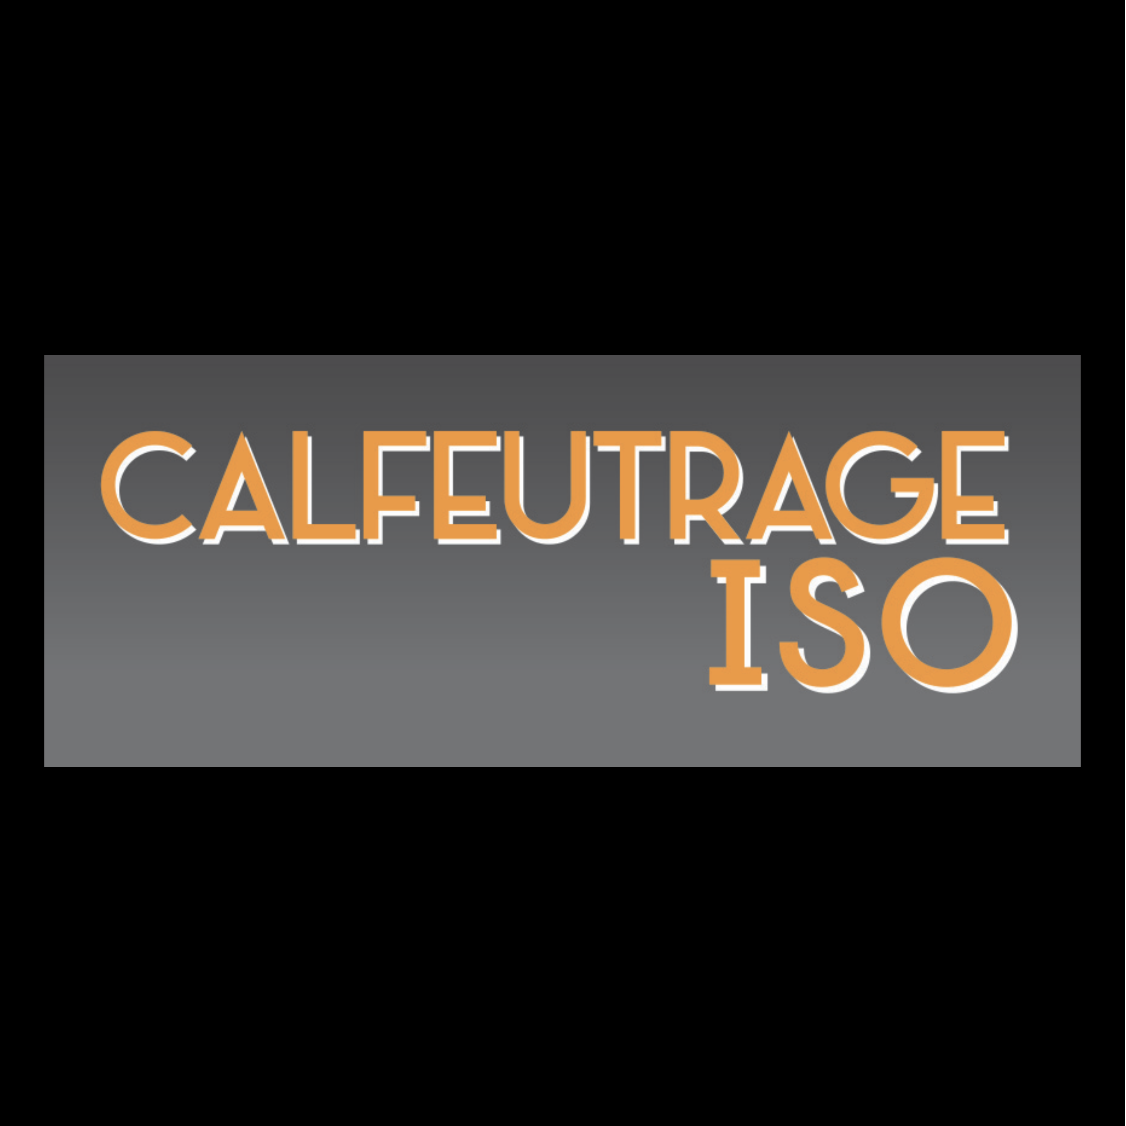 Calfeutrage ISO | Calfeutrage Laval Bois-Des-Filion (514)576-2646